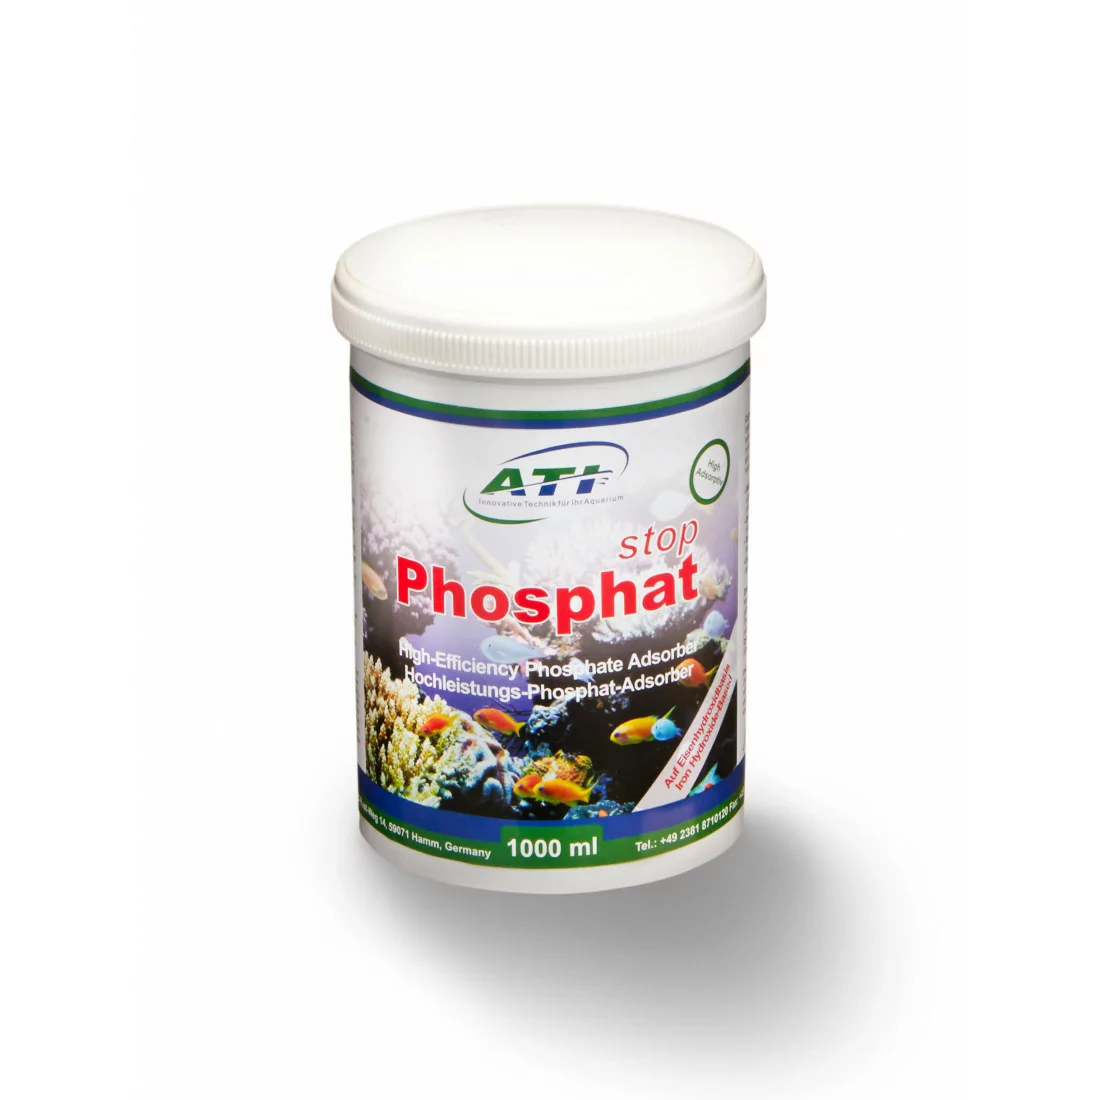 Phosphat stop 1000ml